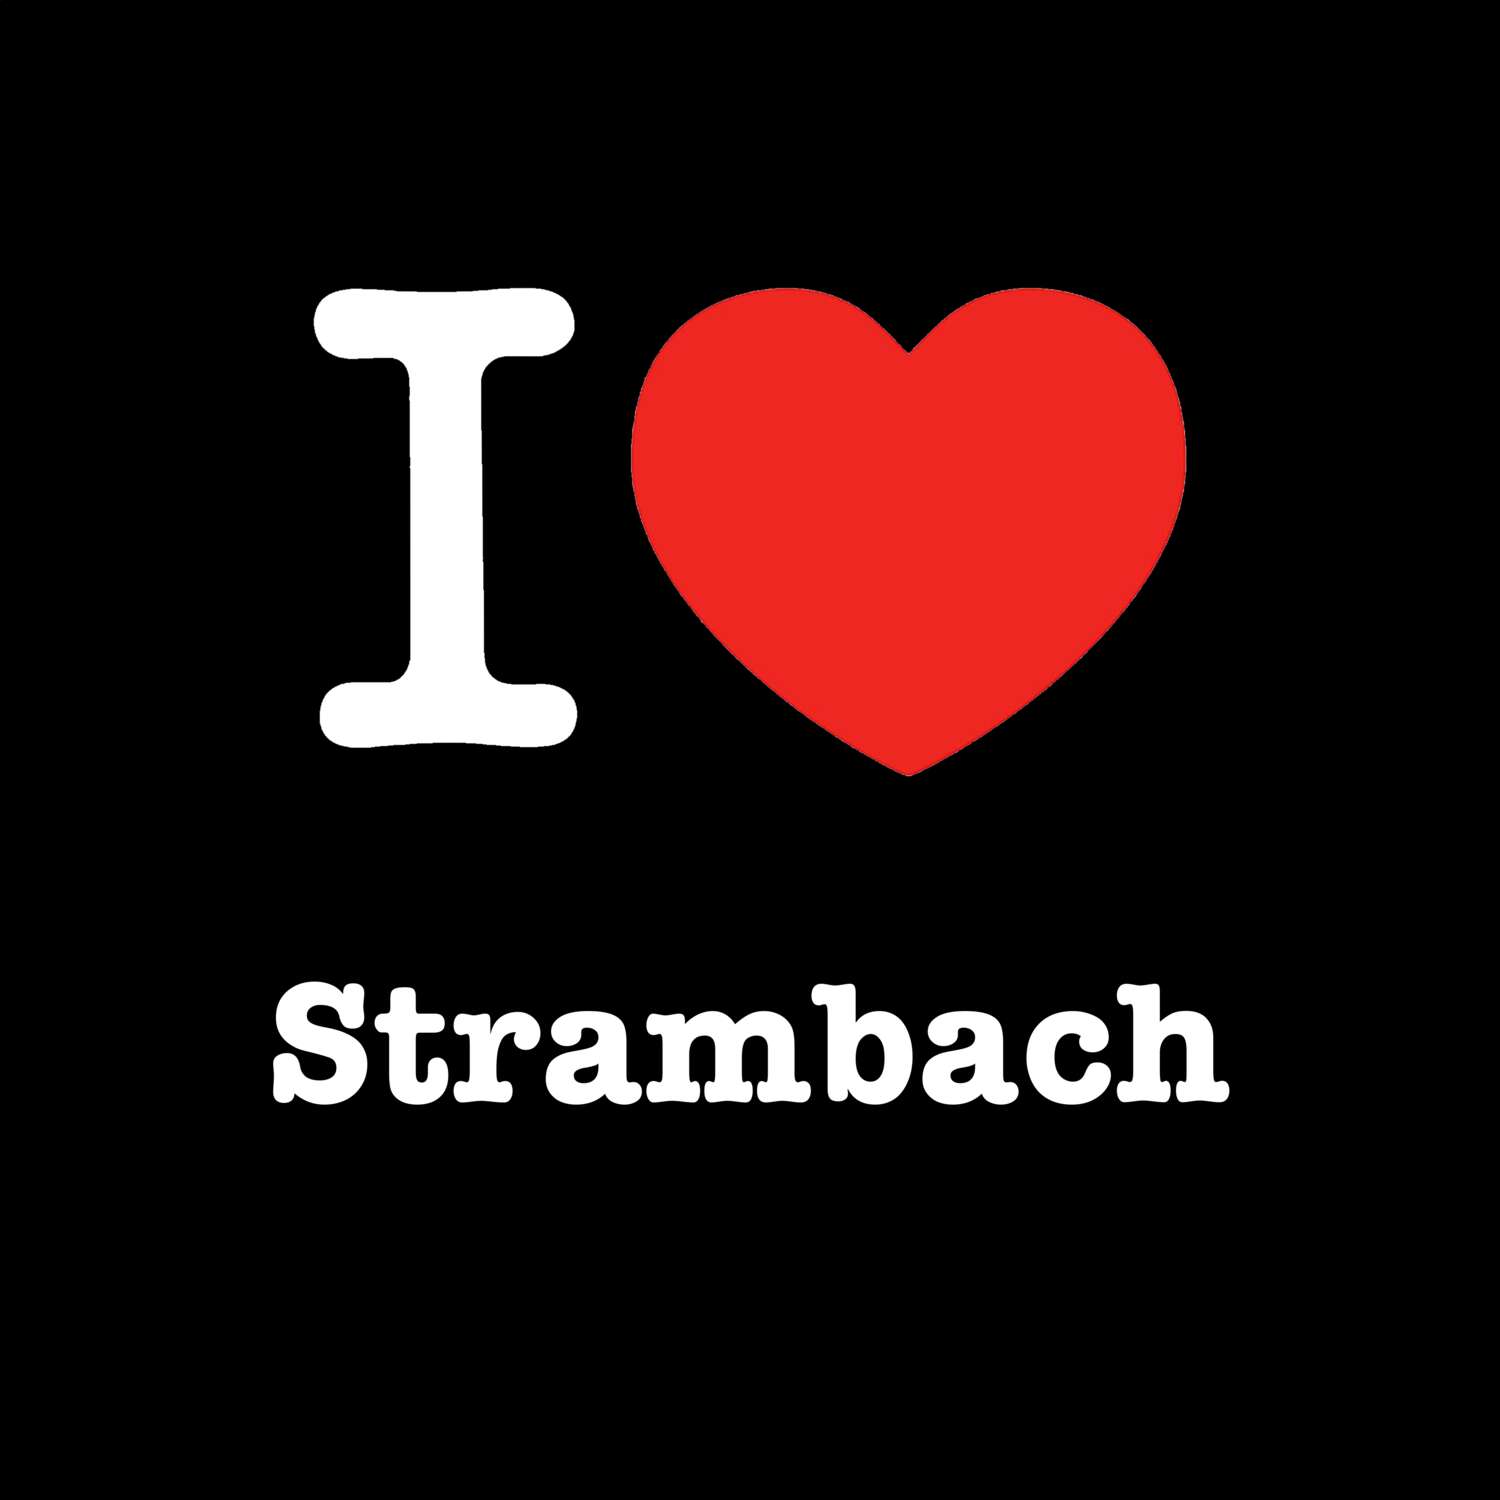 Strambach T-Shirt »I love«